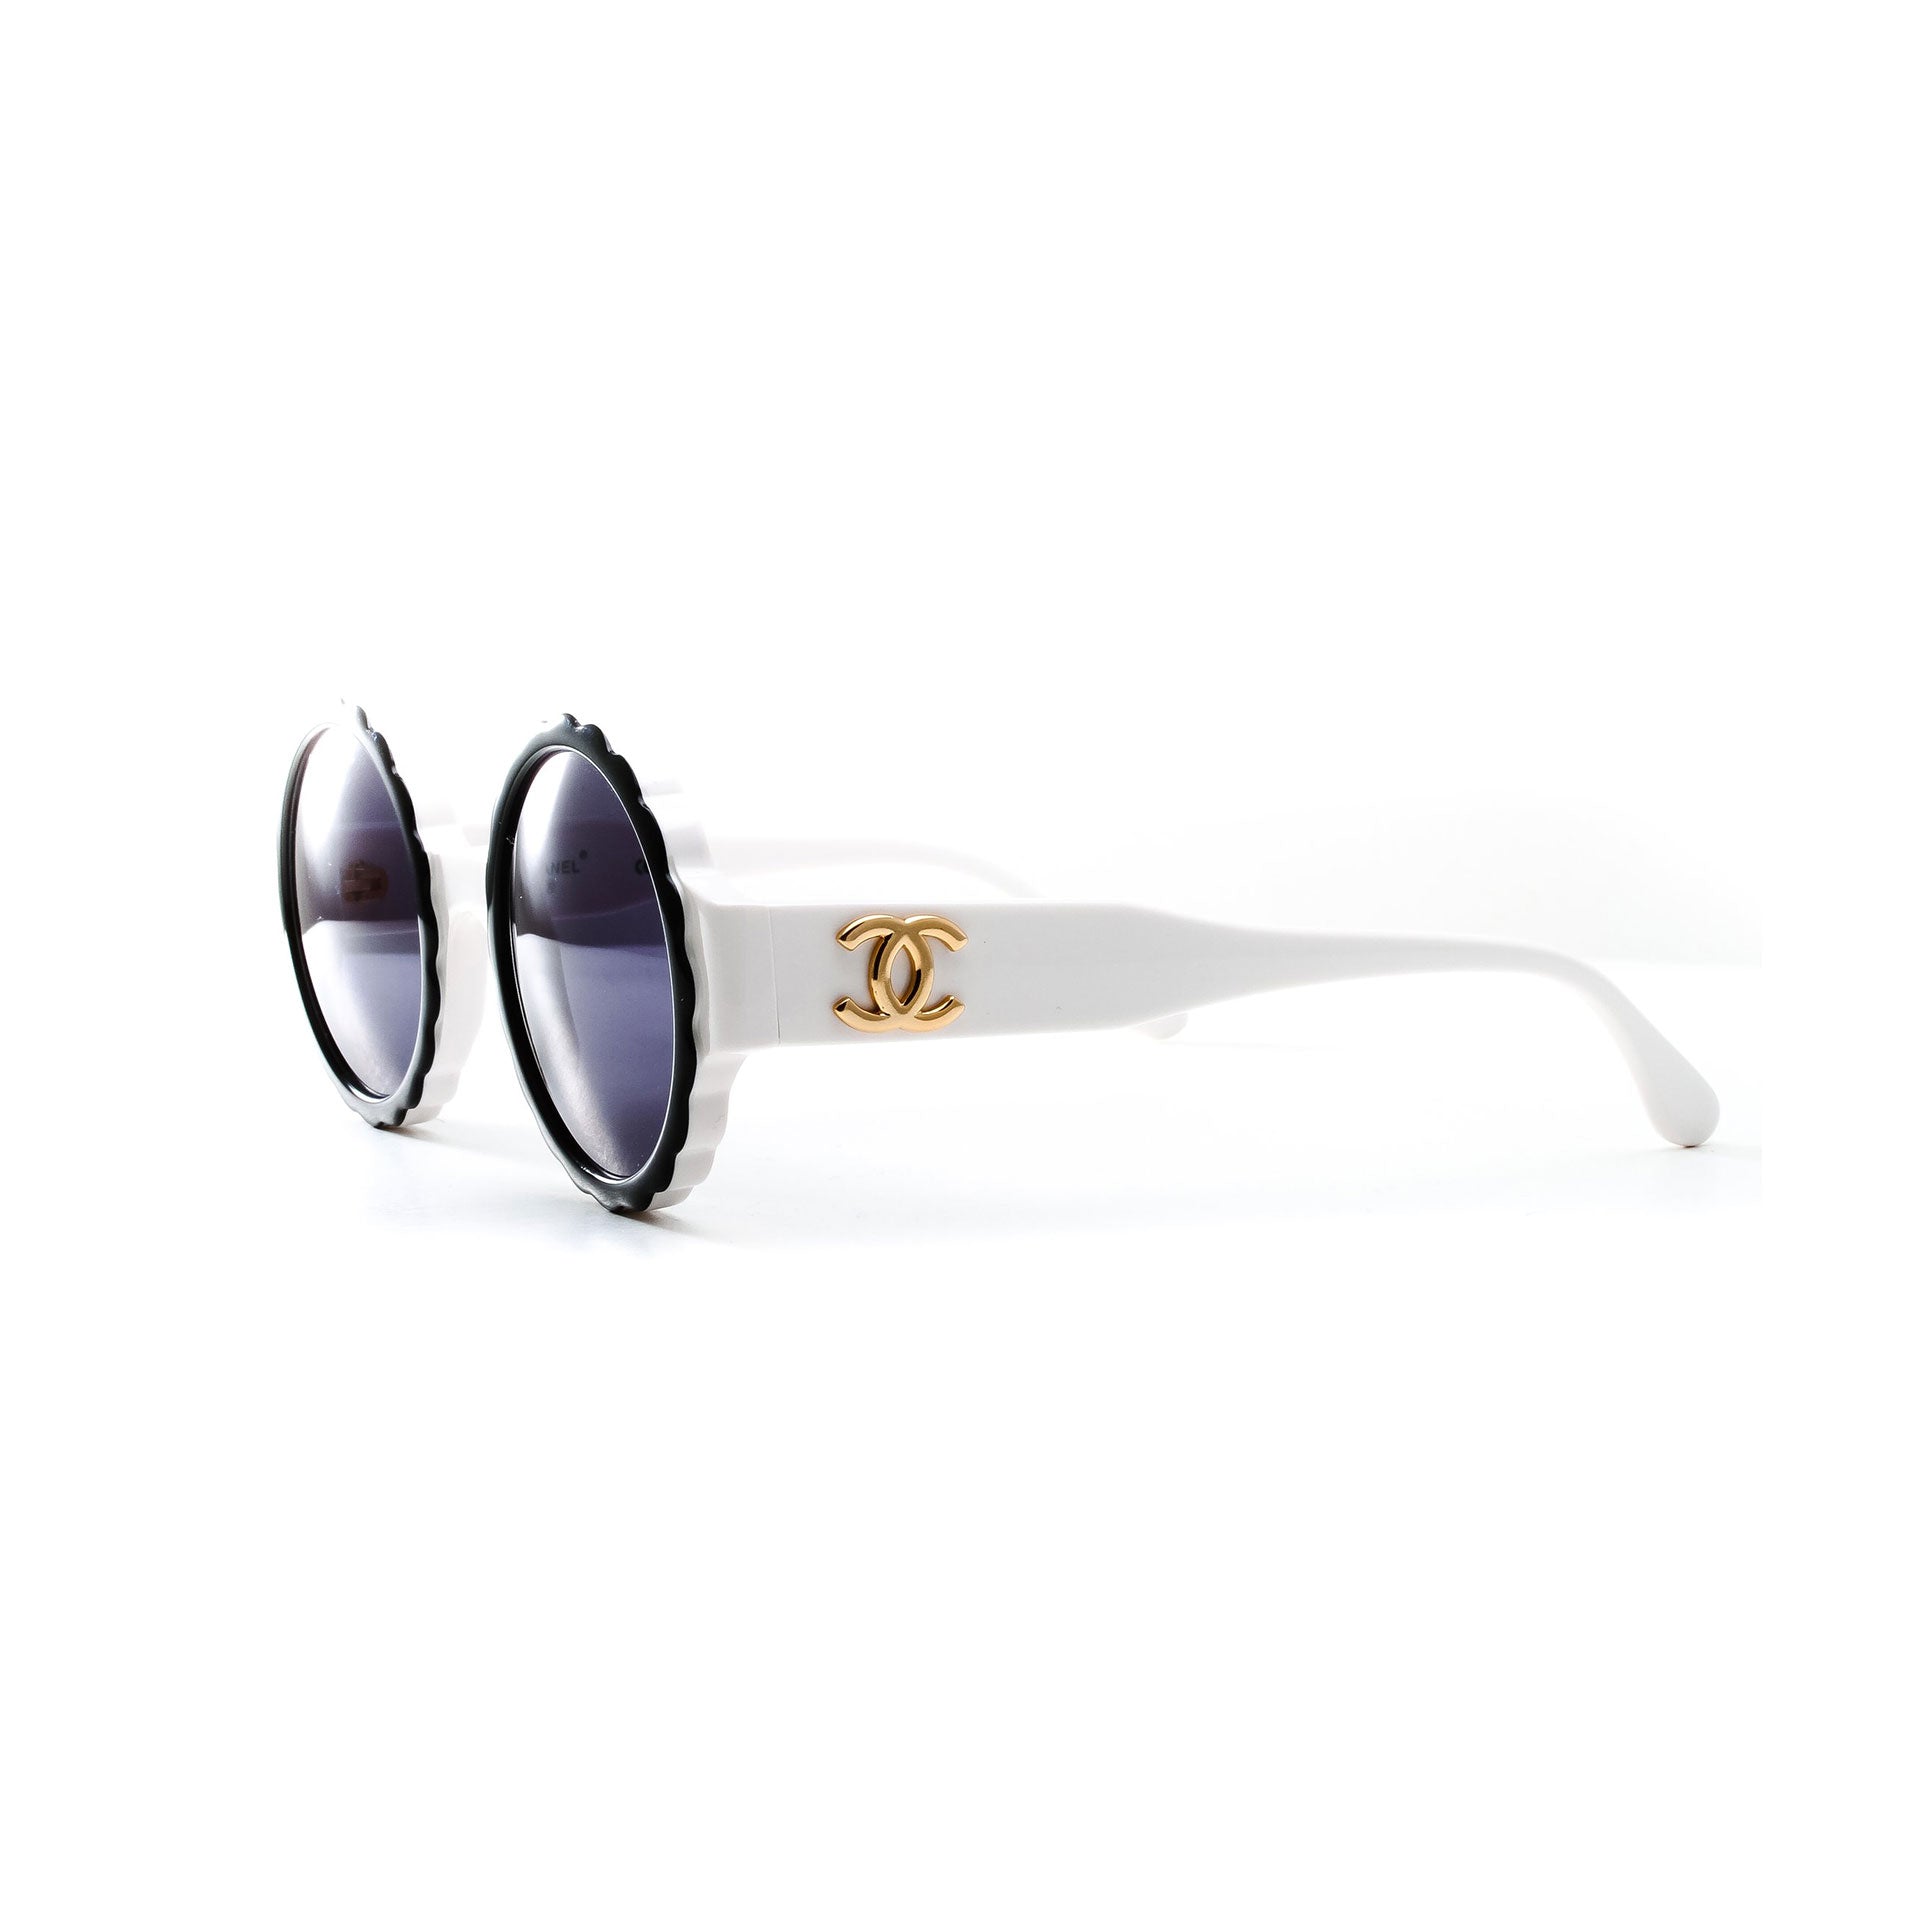 Chanel Round Logo Sunglasses Black & White